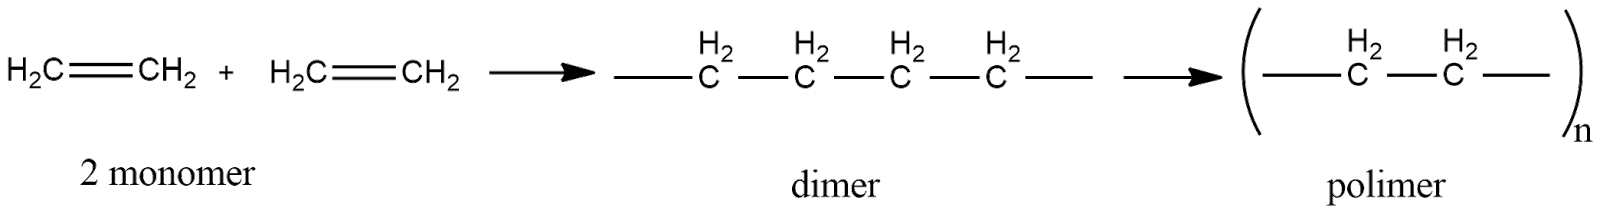 3 Метилбутанол 2 h2so4. 3 Метилбутанол 1 h2so4 конц. Реакция дегидратации 2 метил бутанол 2. 2 Метилбутанол 2 h2so4. Бутанол 1 h2so4